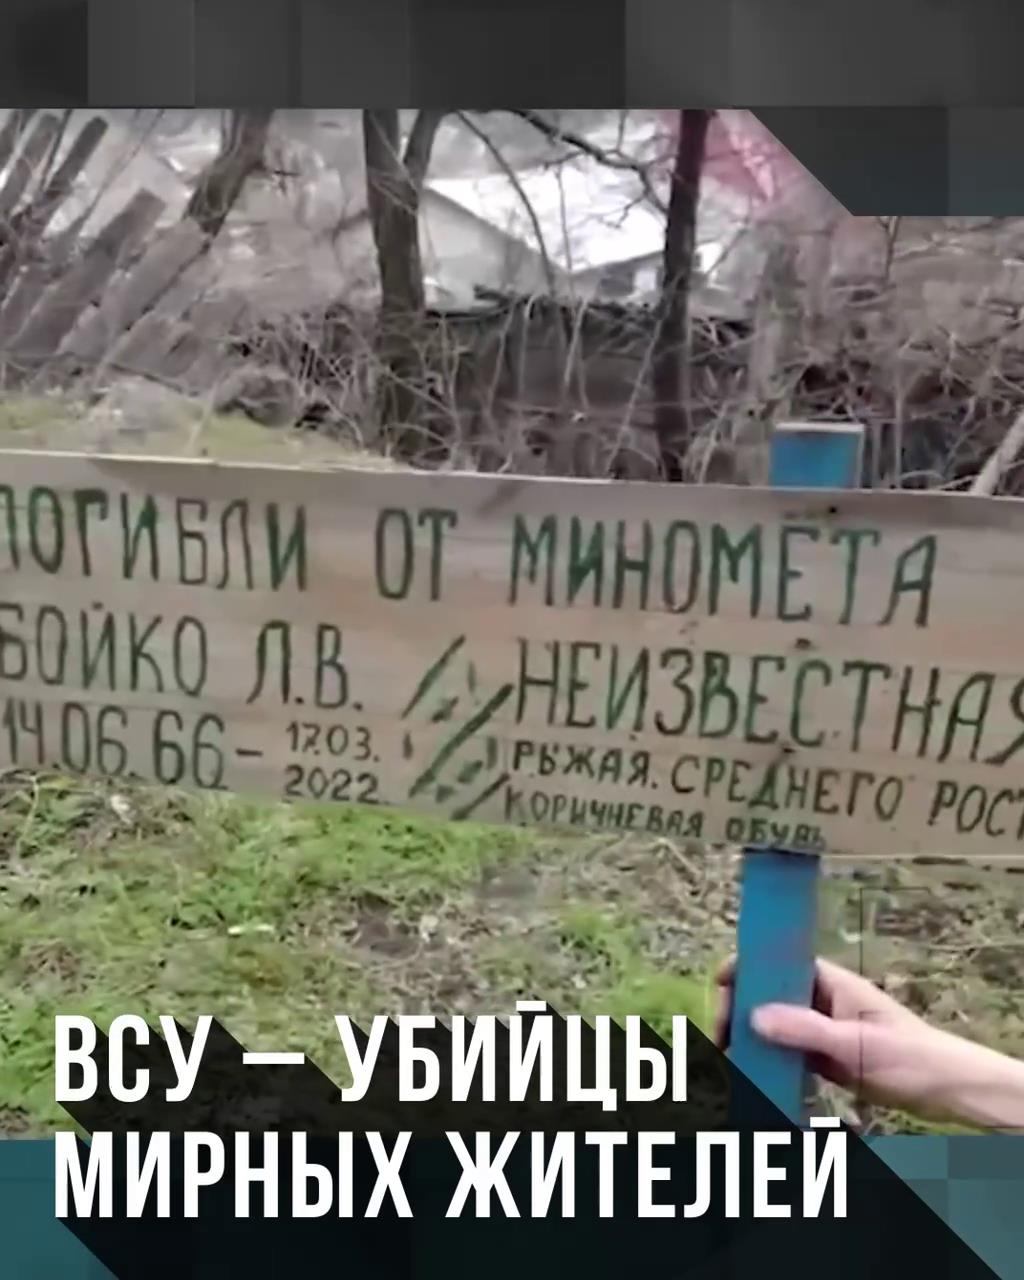 ВСУ – убийцы мирных жителей Донбасса